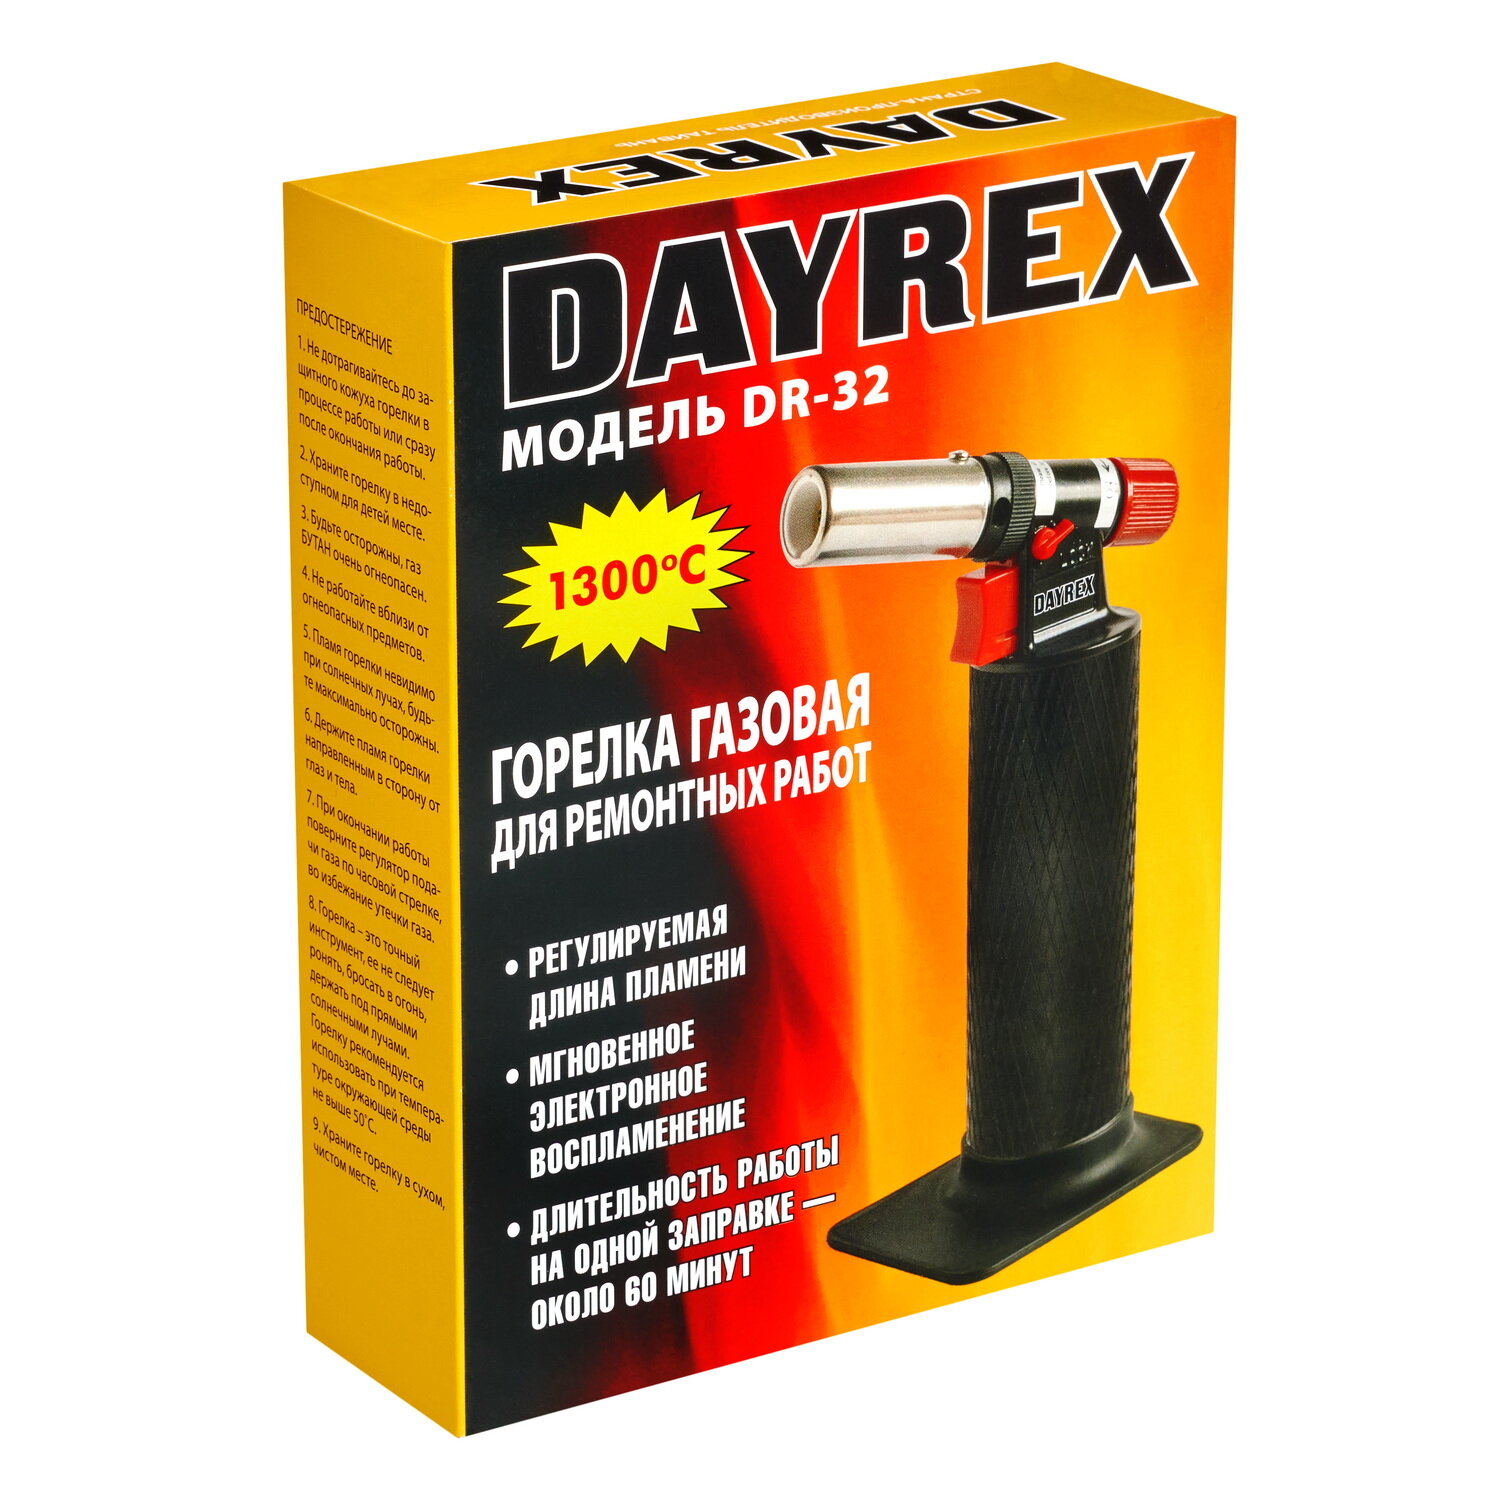 Газовая горелка DAYREX-32